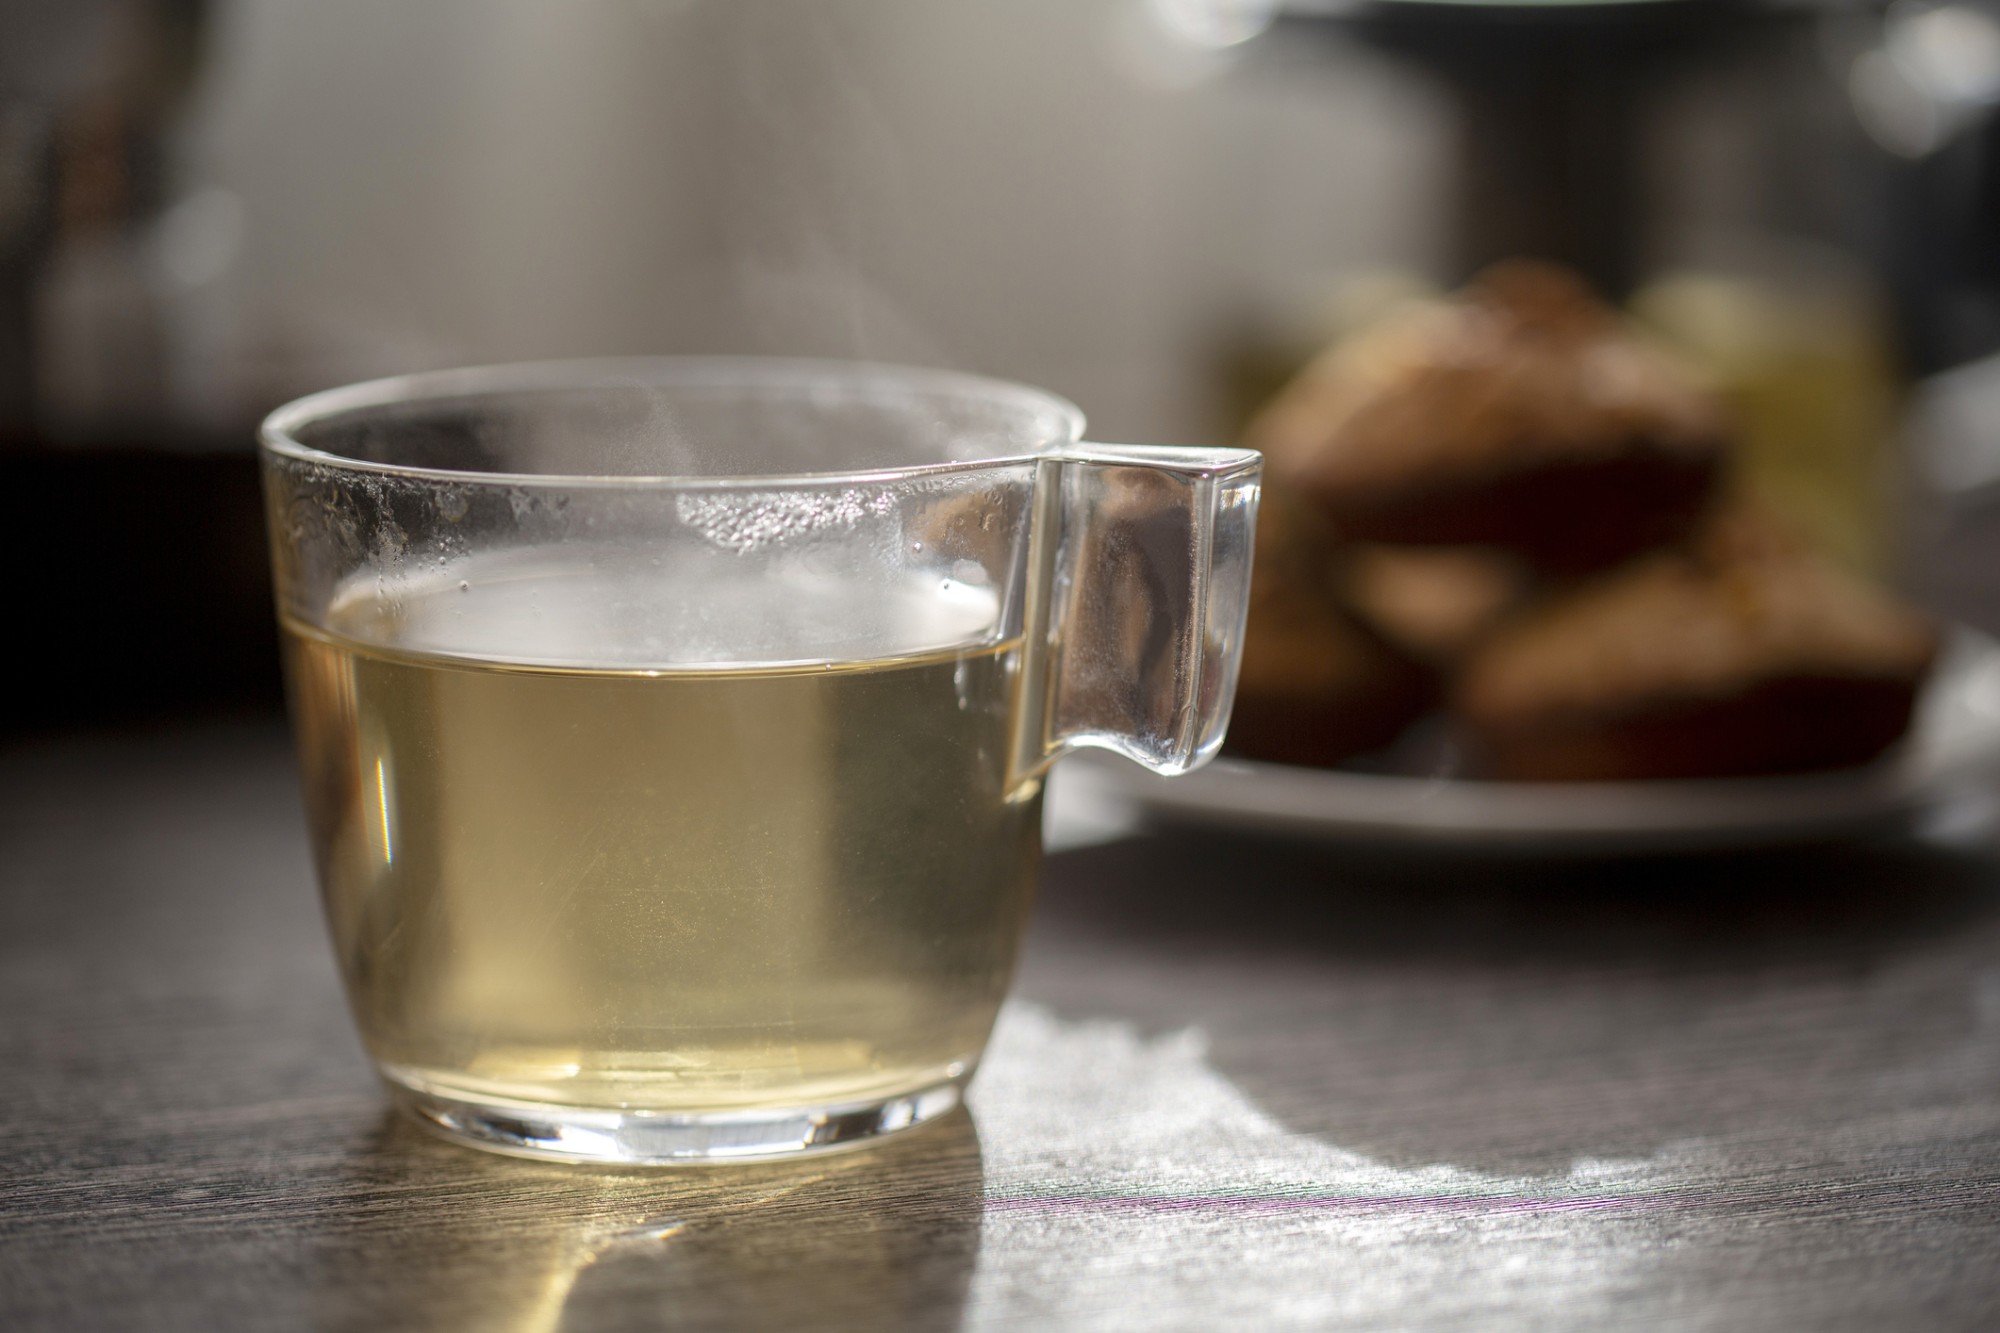 xícara de chá de baleeira em cima de mesa de madeira, com bolinhos de noz caseiro desfocados no fundo da imagem